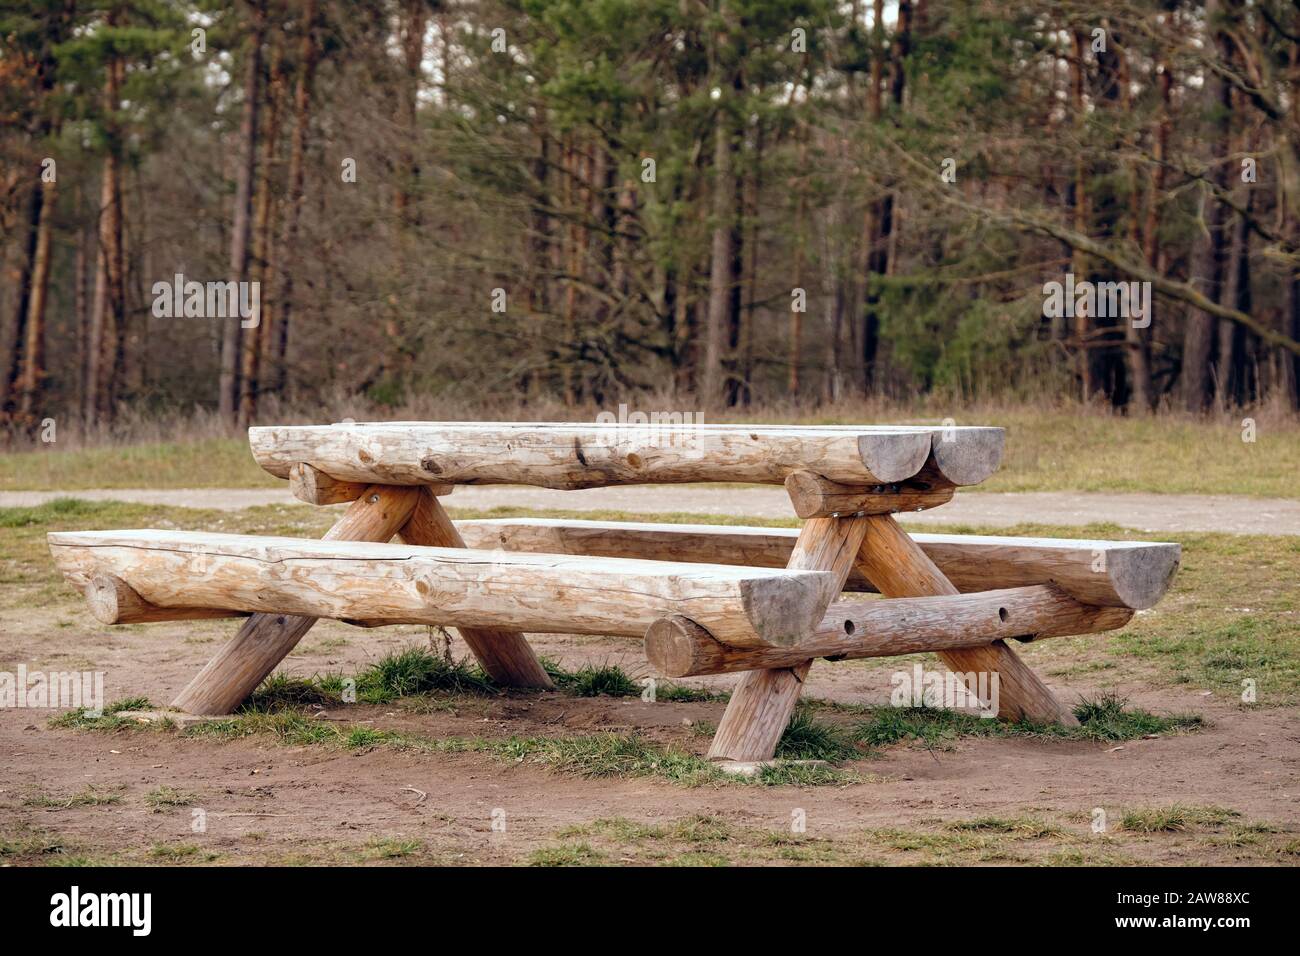 Panca rustica in legno e tavolo composto da tronchi d'albero su un prato di fronte ad una foresta. Visto in Germania nel mese di gennaio Foto Stock